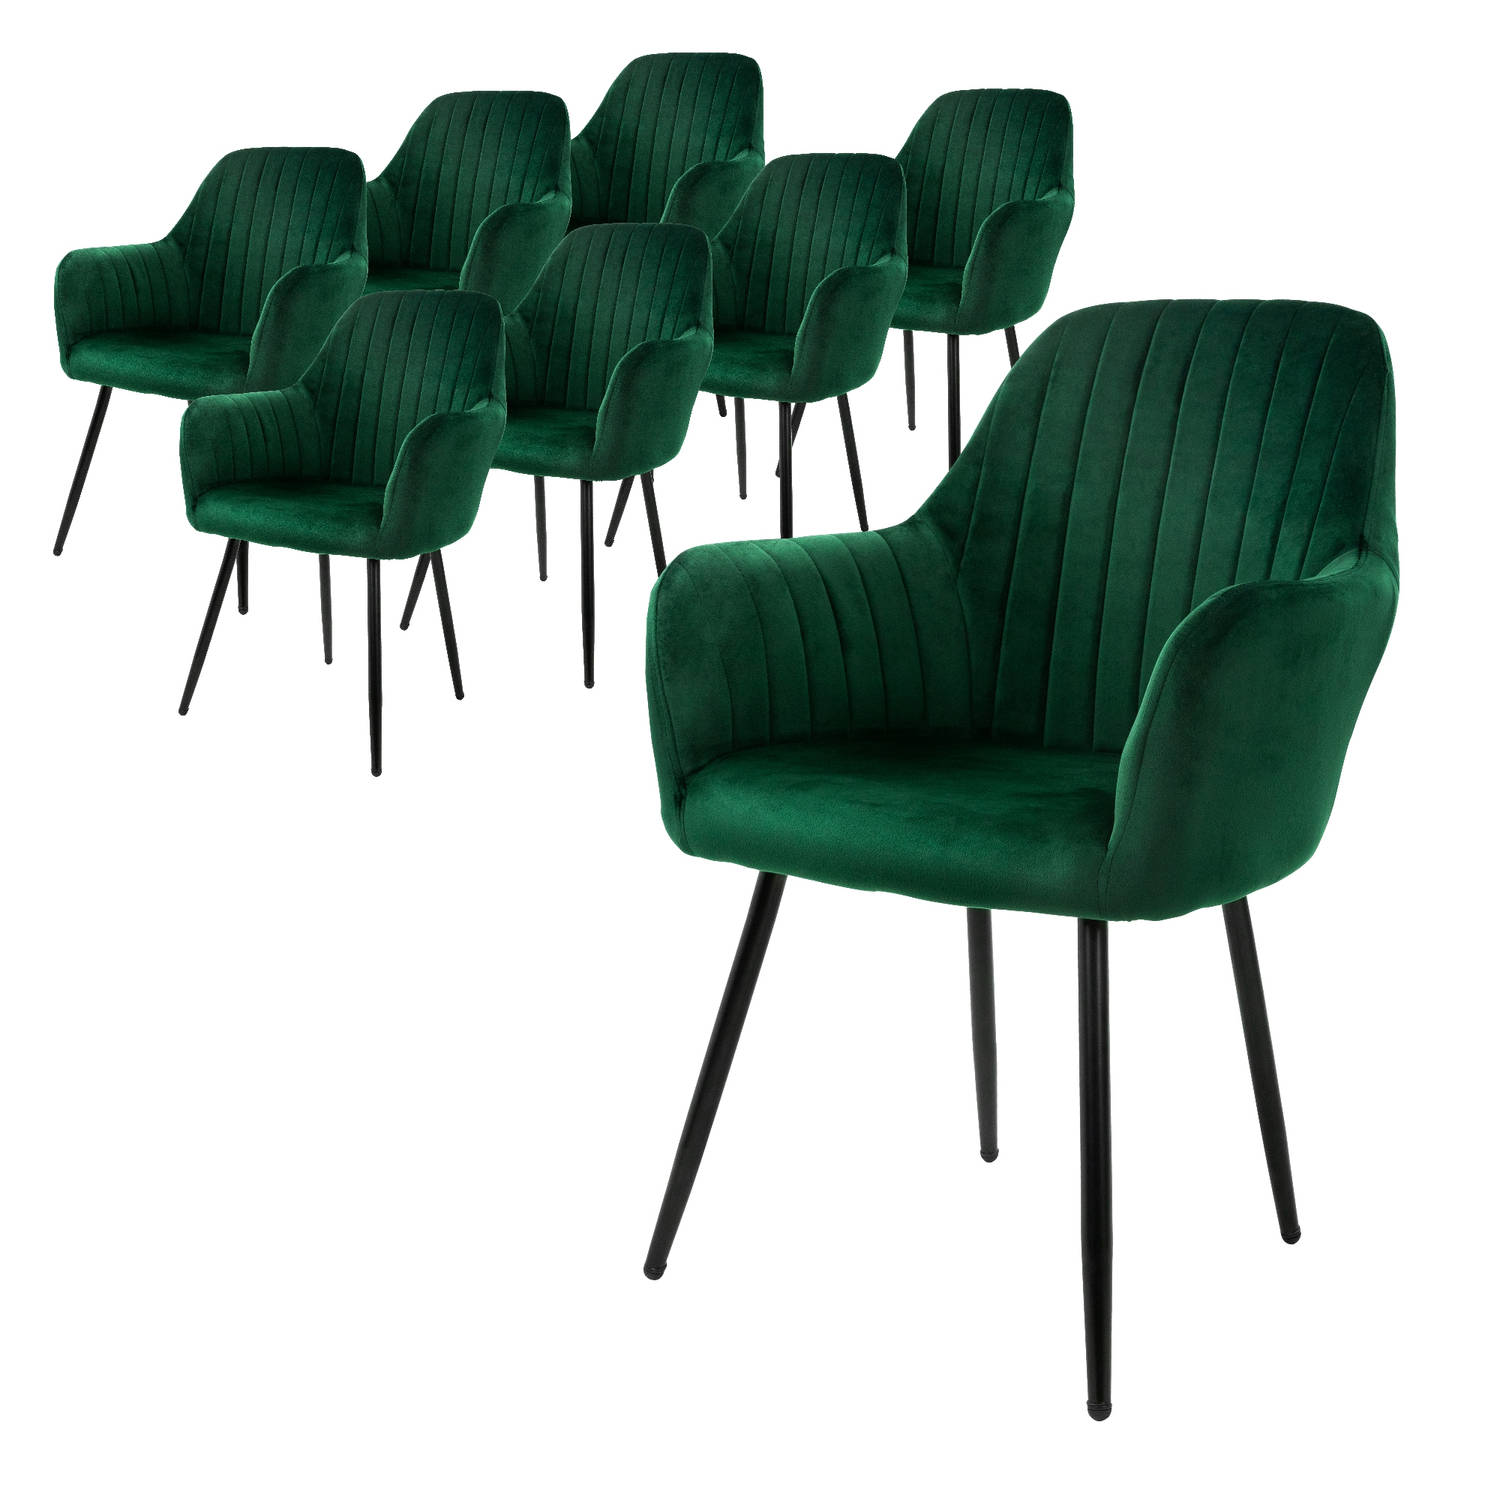 ML-Design set van 8 eetkamerstoelen met rugleuning en armleuningen, groen, keukenstoelen met fluwelen bekleding, gestoffeerde stoelen met metalen poten, ergonomische stoelen voor e